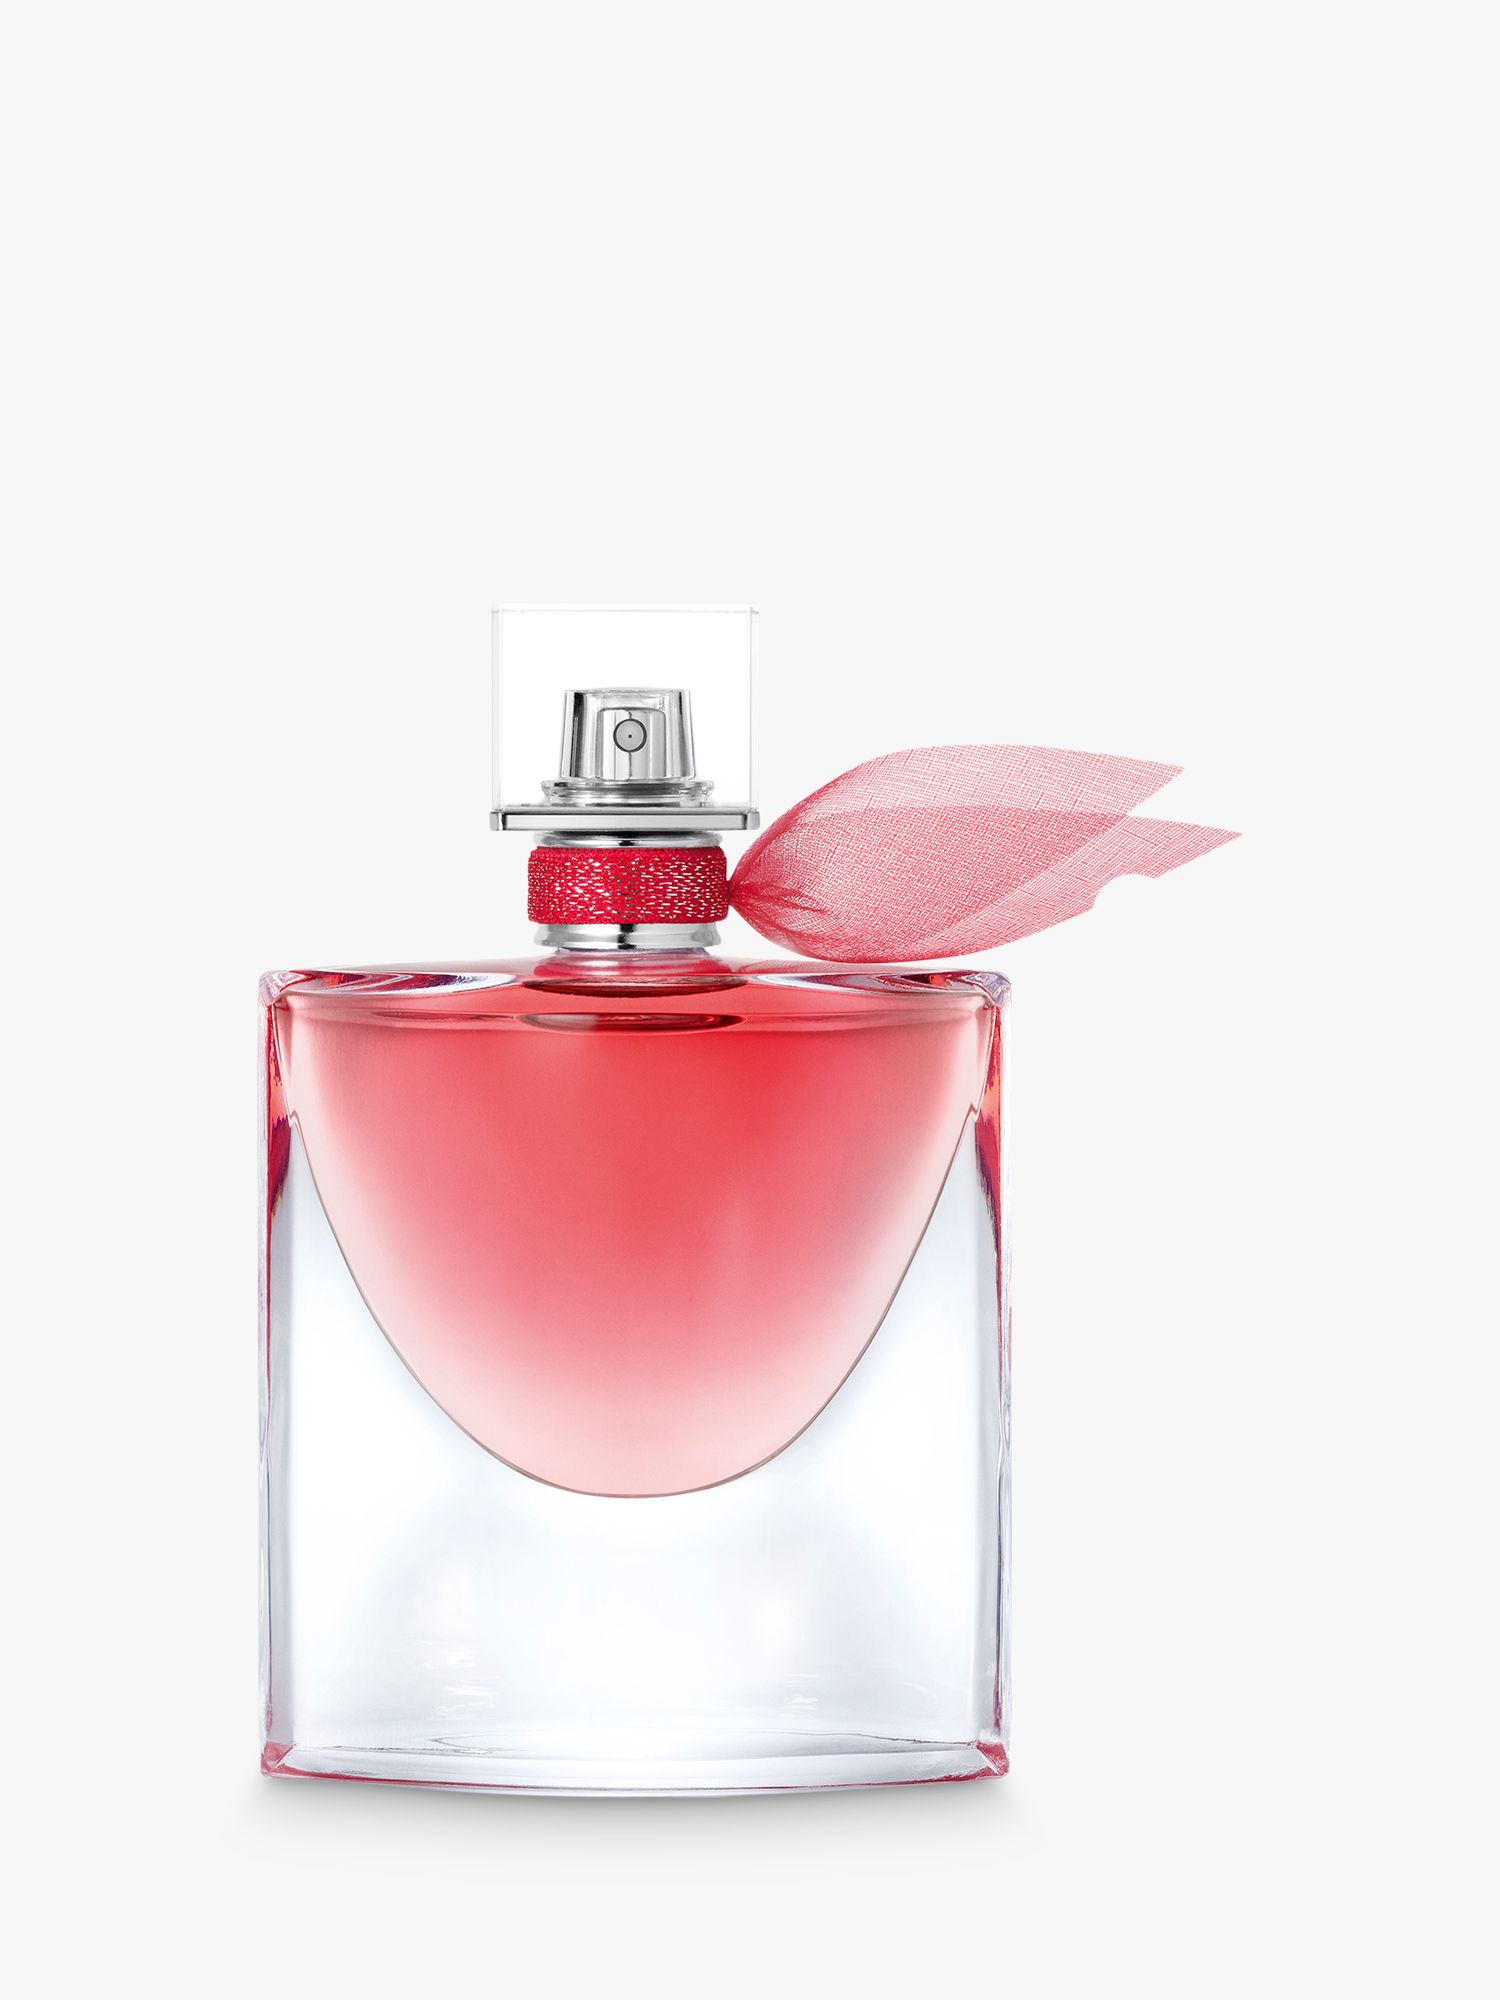 Lancôme La Vie Est Belle Intensément Eau de Parfum, 50ml